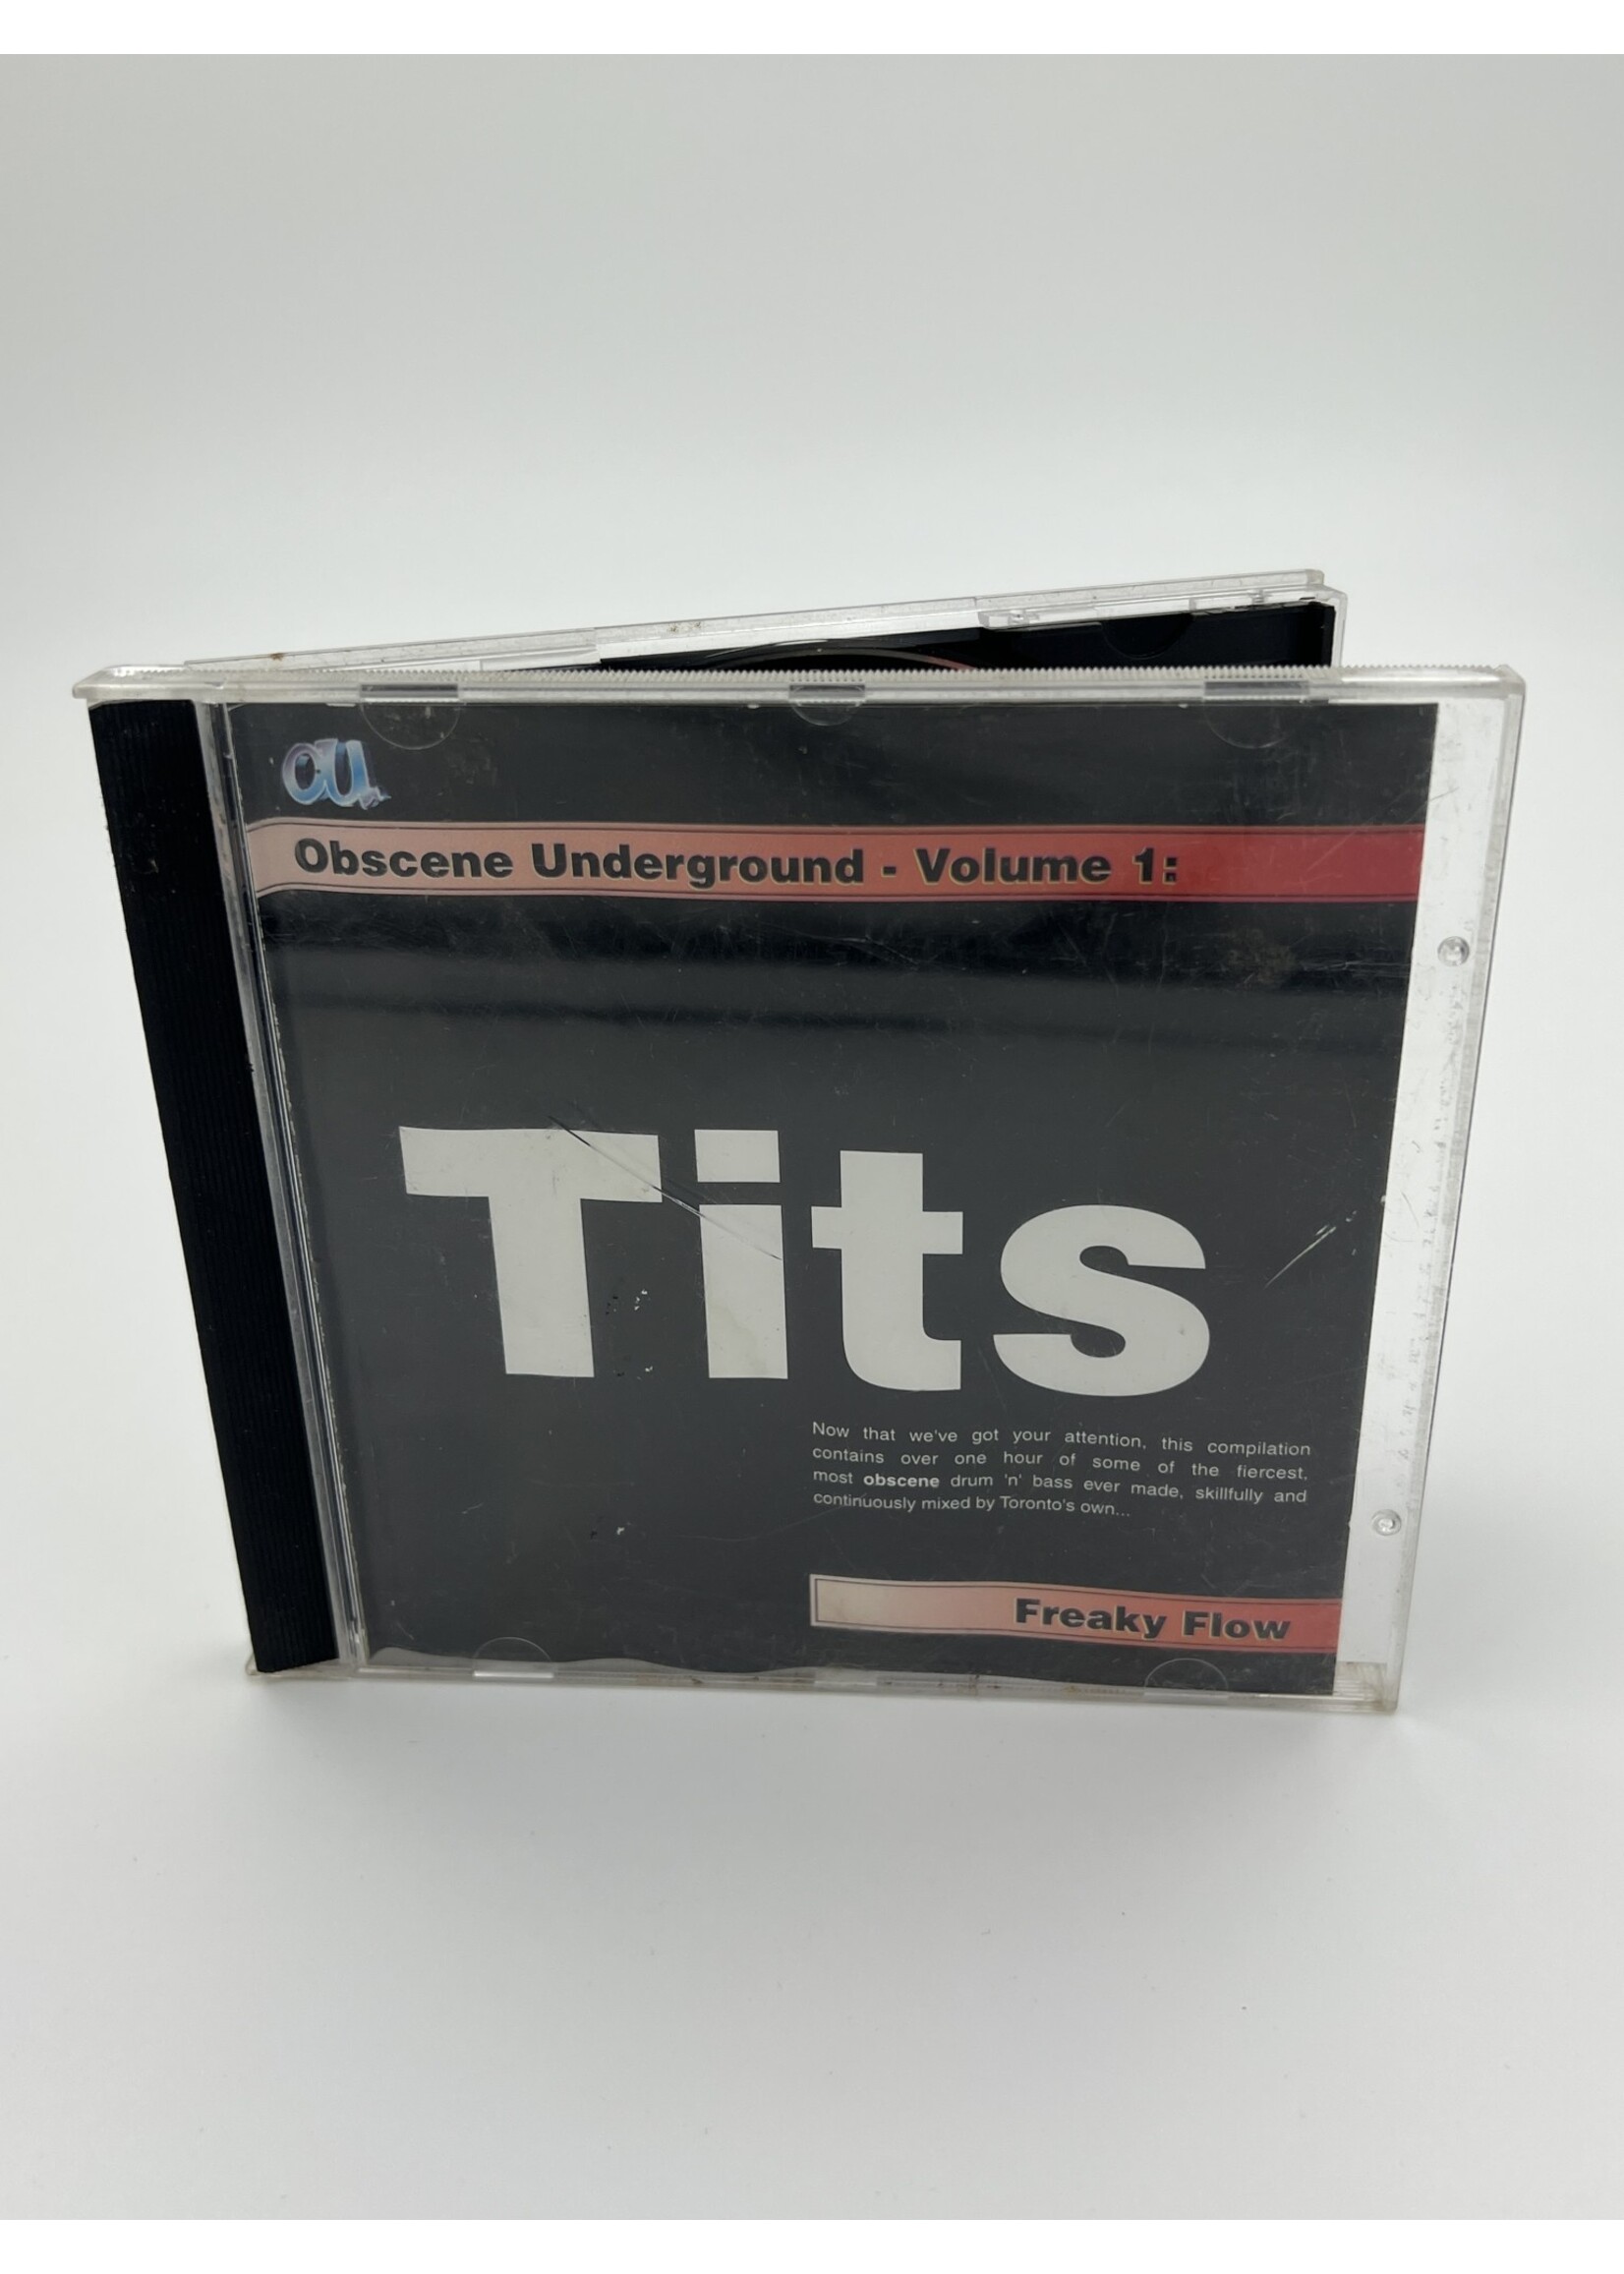 CD Obscene Underground Volume 1 Freaky Flow Various Artist CD